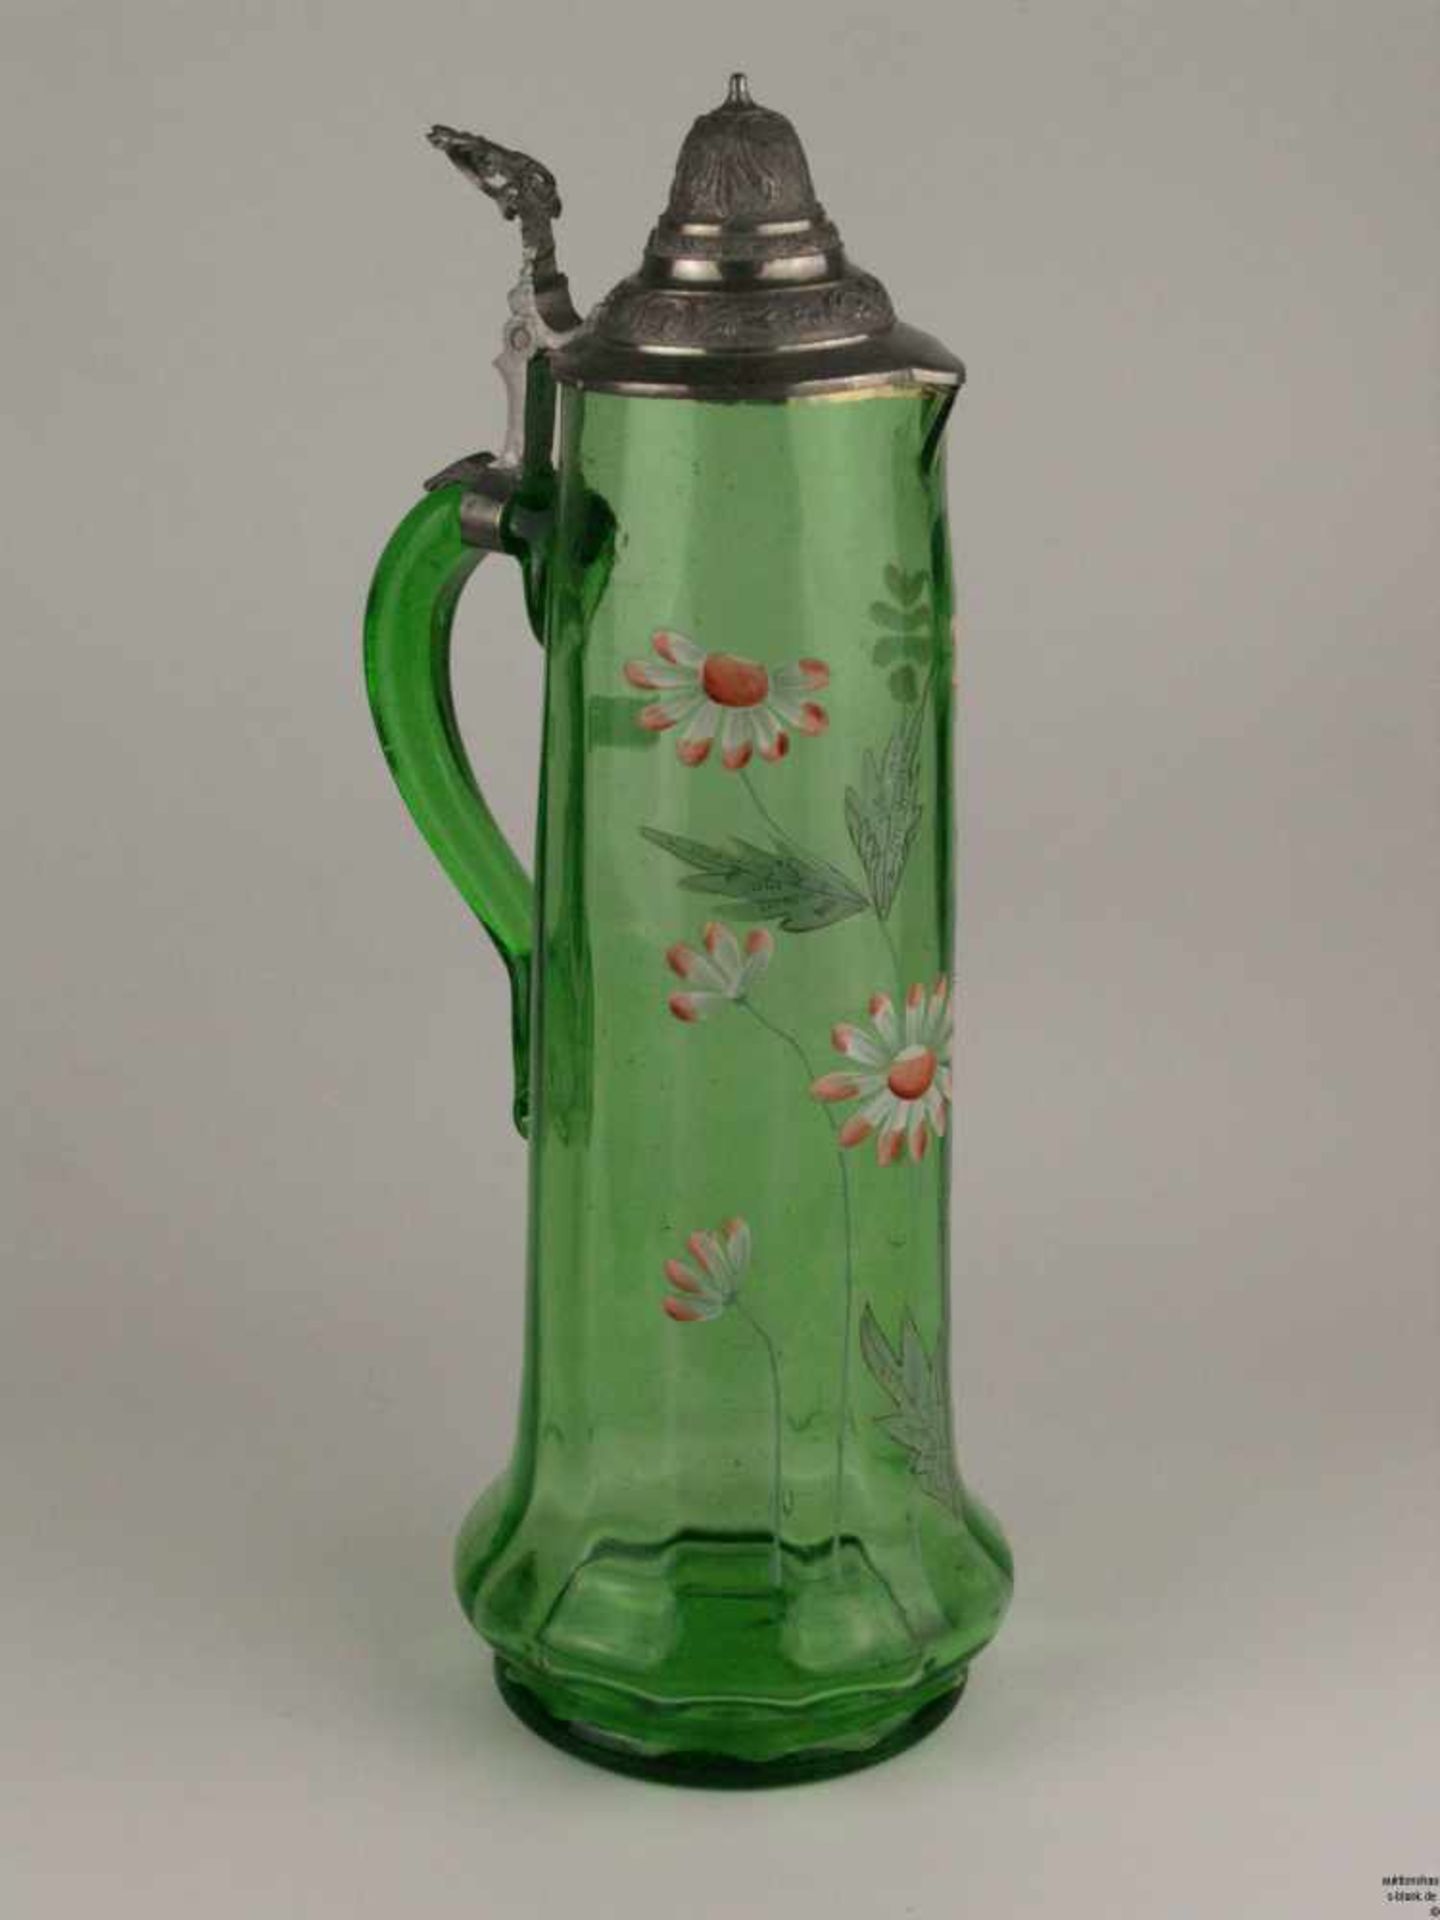 Großer Glaskrug mit Zinndeckel - Grüner Glaskrug mit polychromer Emailmalerei, Blumenmuster, - Bild 2 aus 6